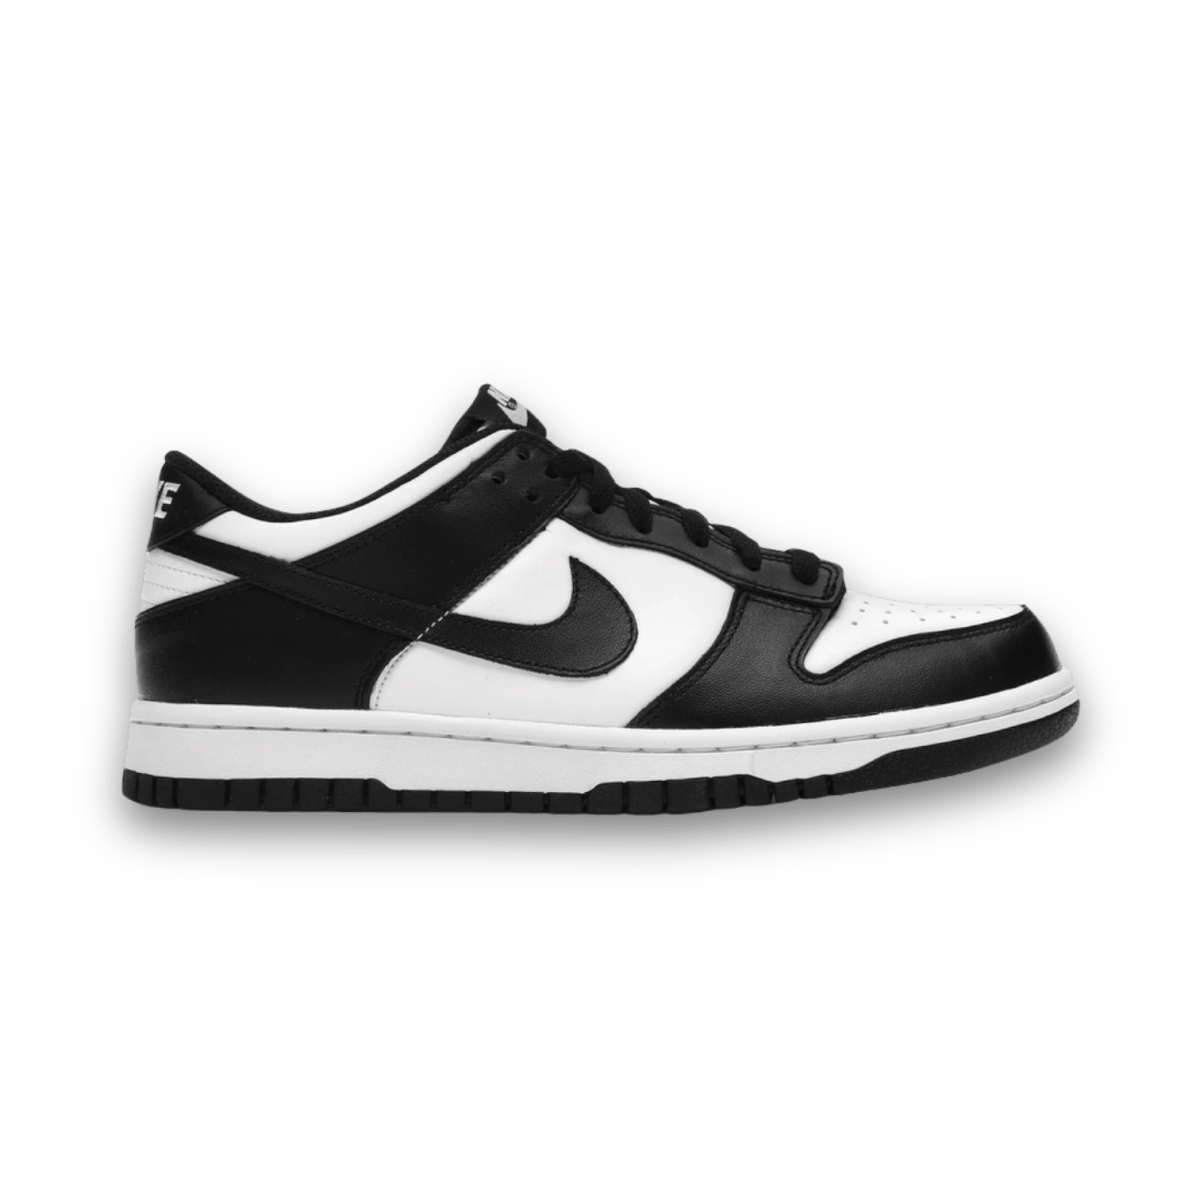 Dunk Low Retro Panda White Black - Pre School - Low Sneaker - Jawns on Fire Sneakers & Streetwear